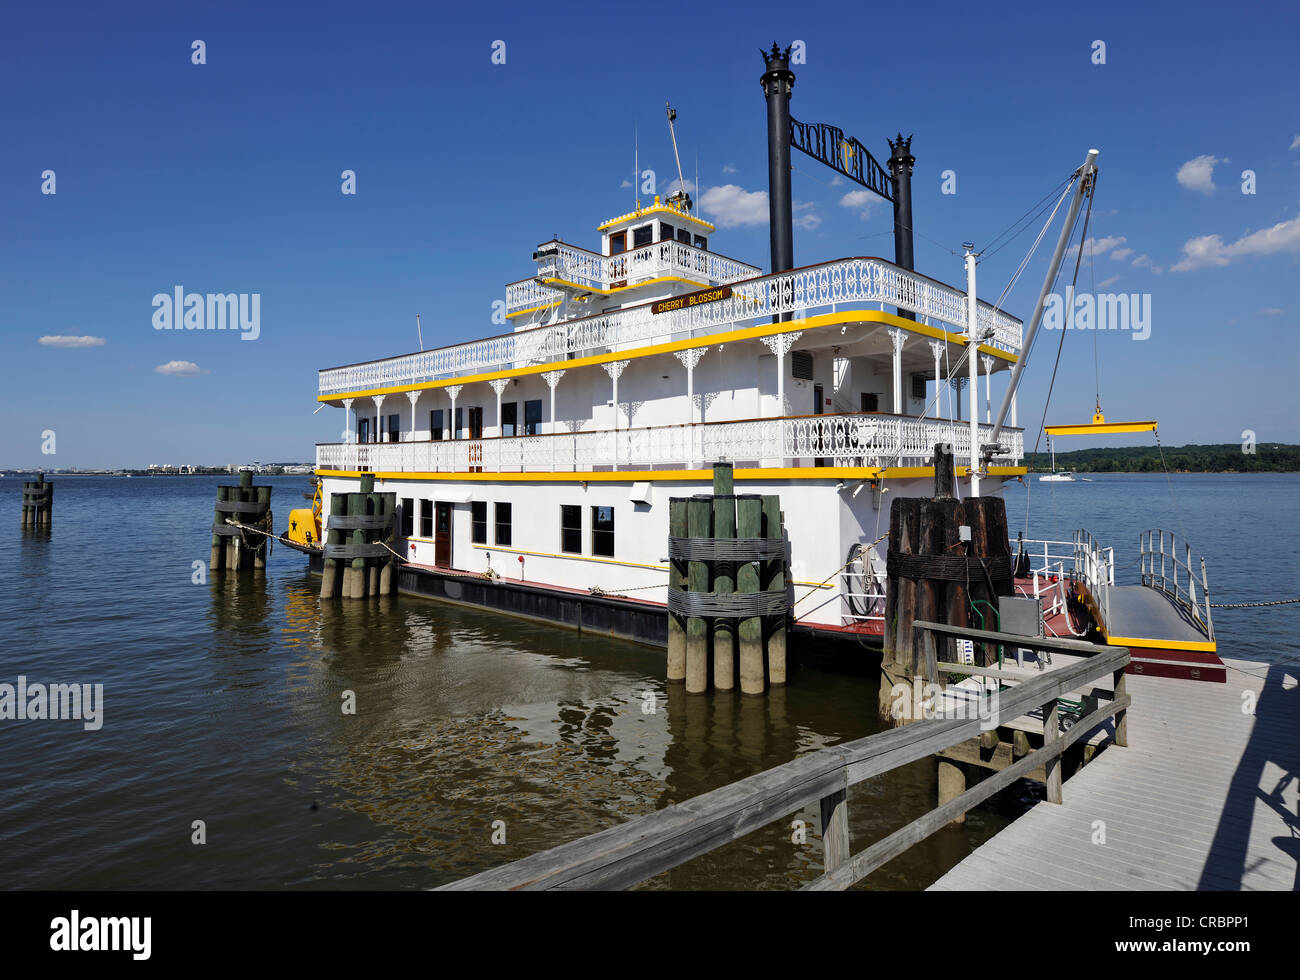 Cherry Blossom Paddel Boot, Alexandria National Harbor, Waterfront, alte Stadt von Alexandria, Virginia, Vereinigte Staaten von Amerika Stockfoto